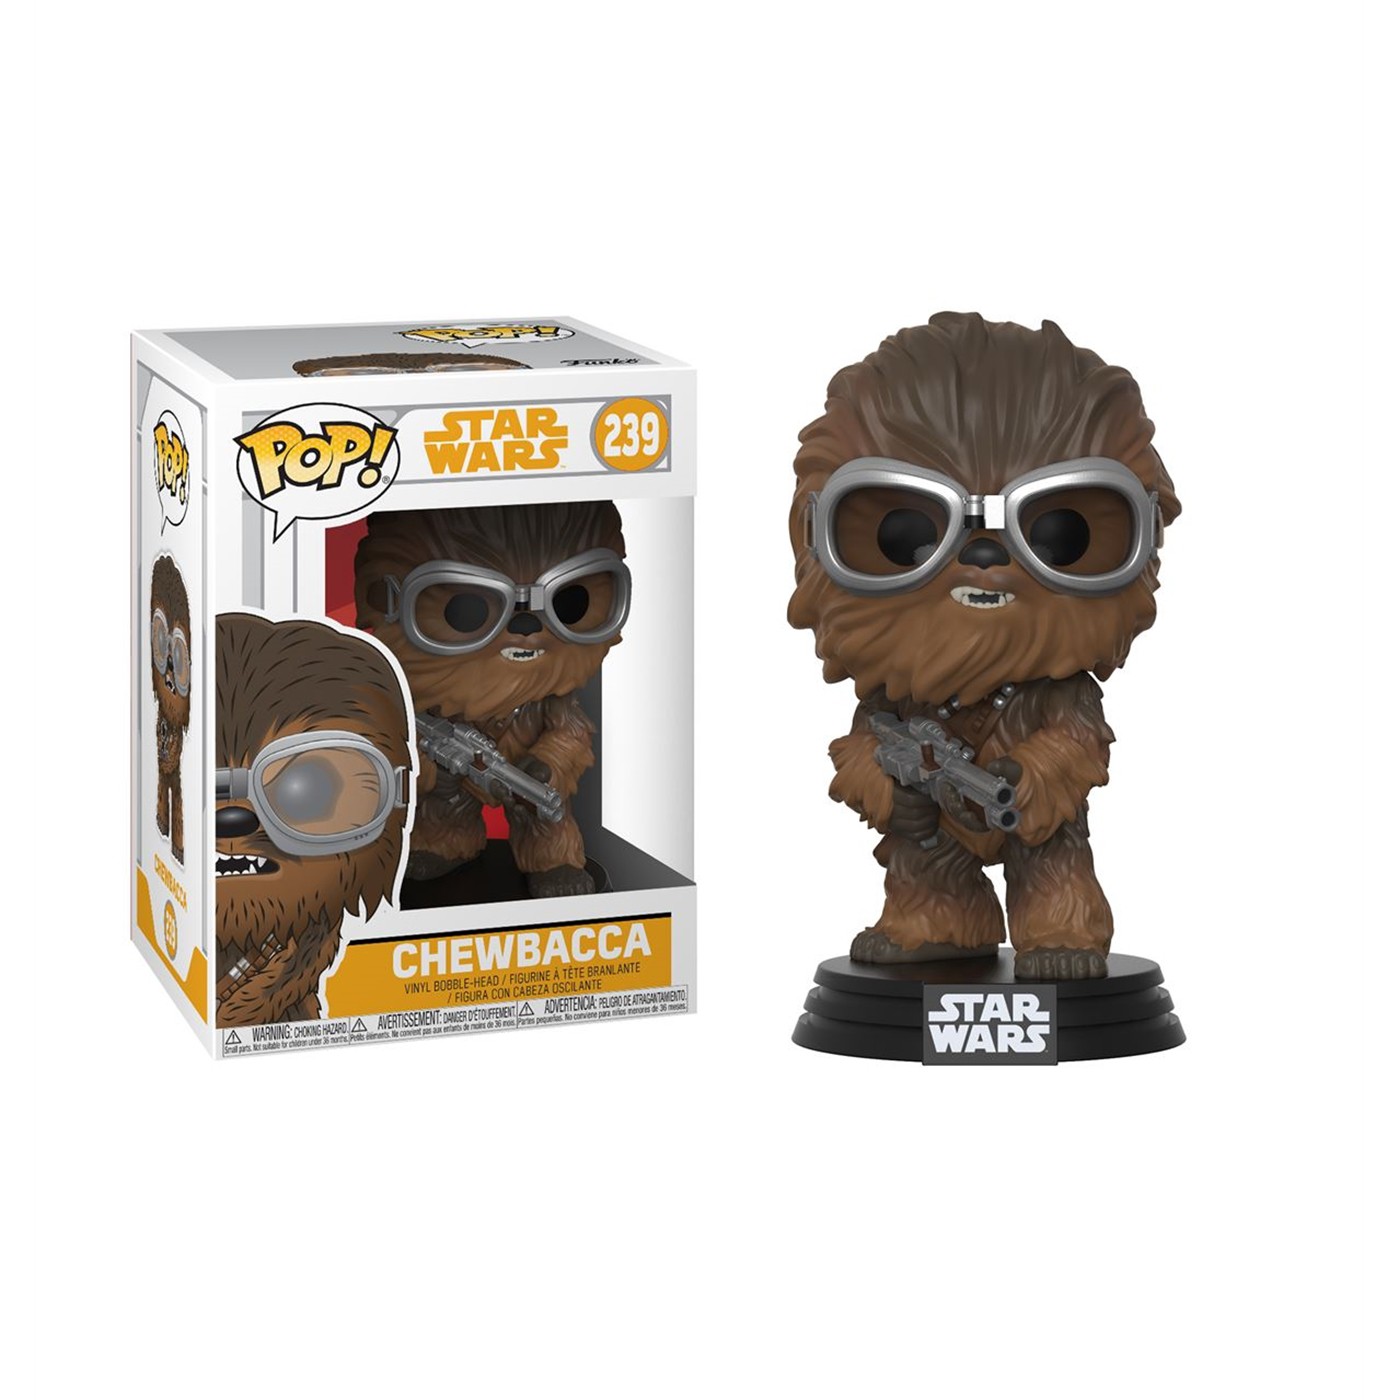 Star Wars Solo Chewbacca Funko Pop Bobble Head